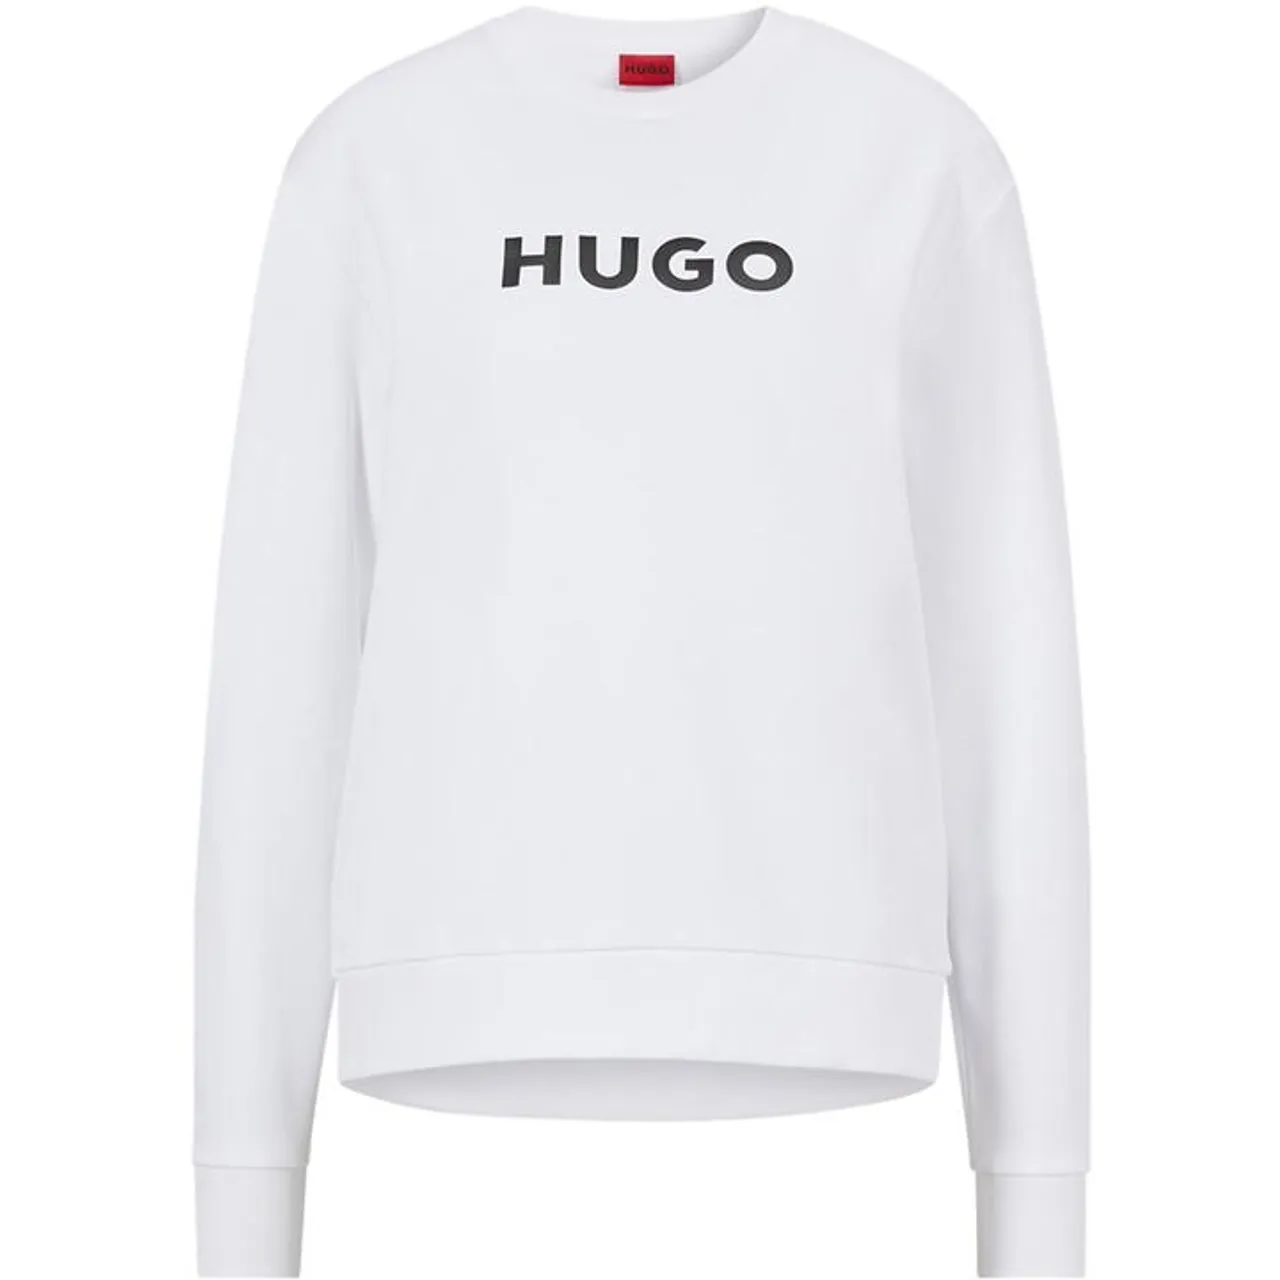 Hugo Logo Hugo Sweatshirt - White